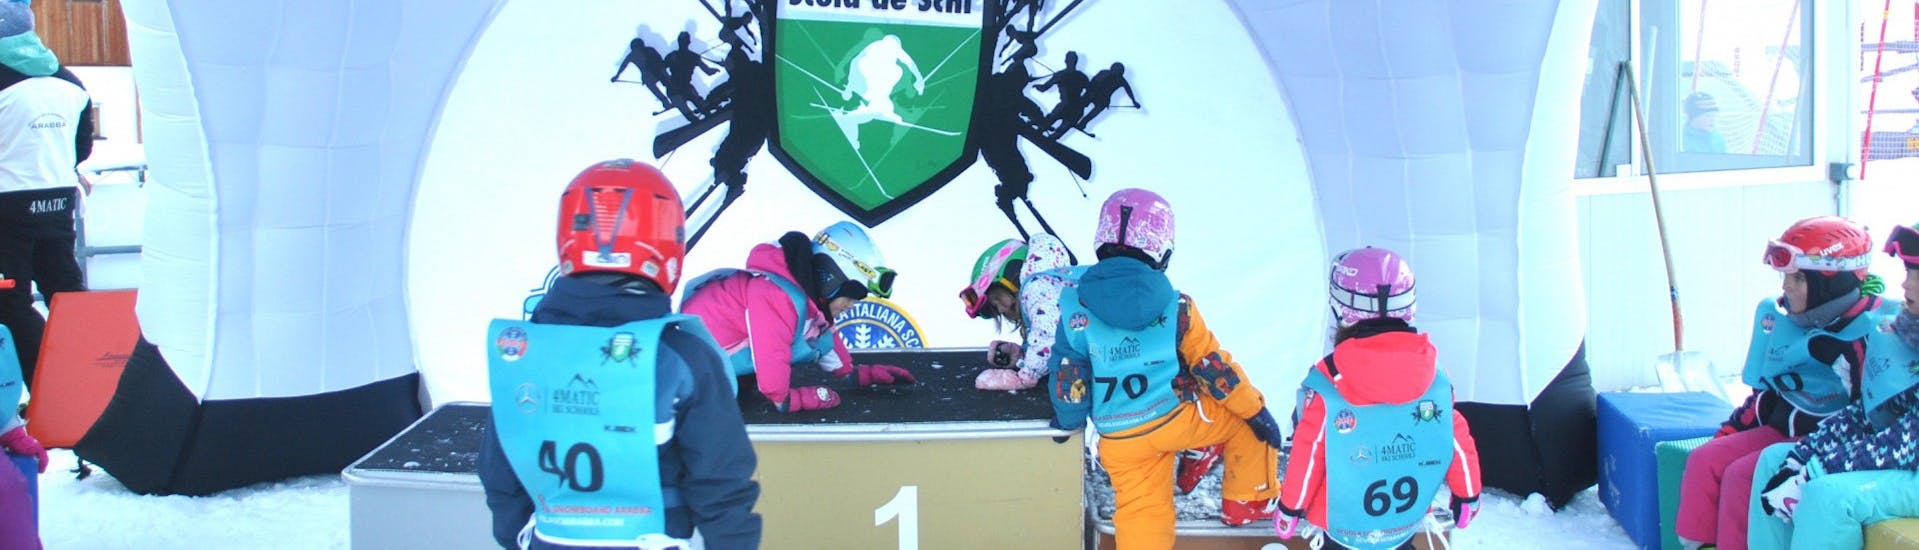 Les petits skieurs dans l'espace enfants pendant les cours de ski pour enfants (à partir de 4 ans) pour tous les niveaux avec Scuola Italiana Sci Arabba.